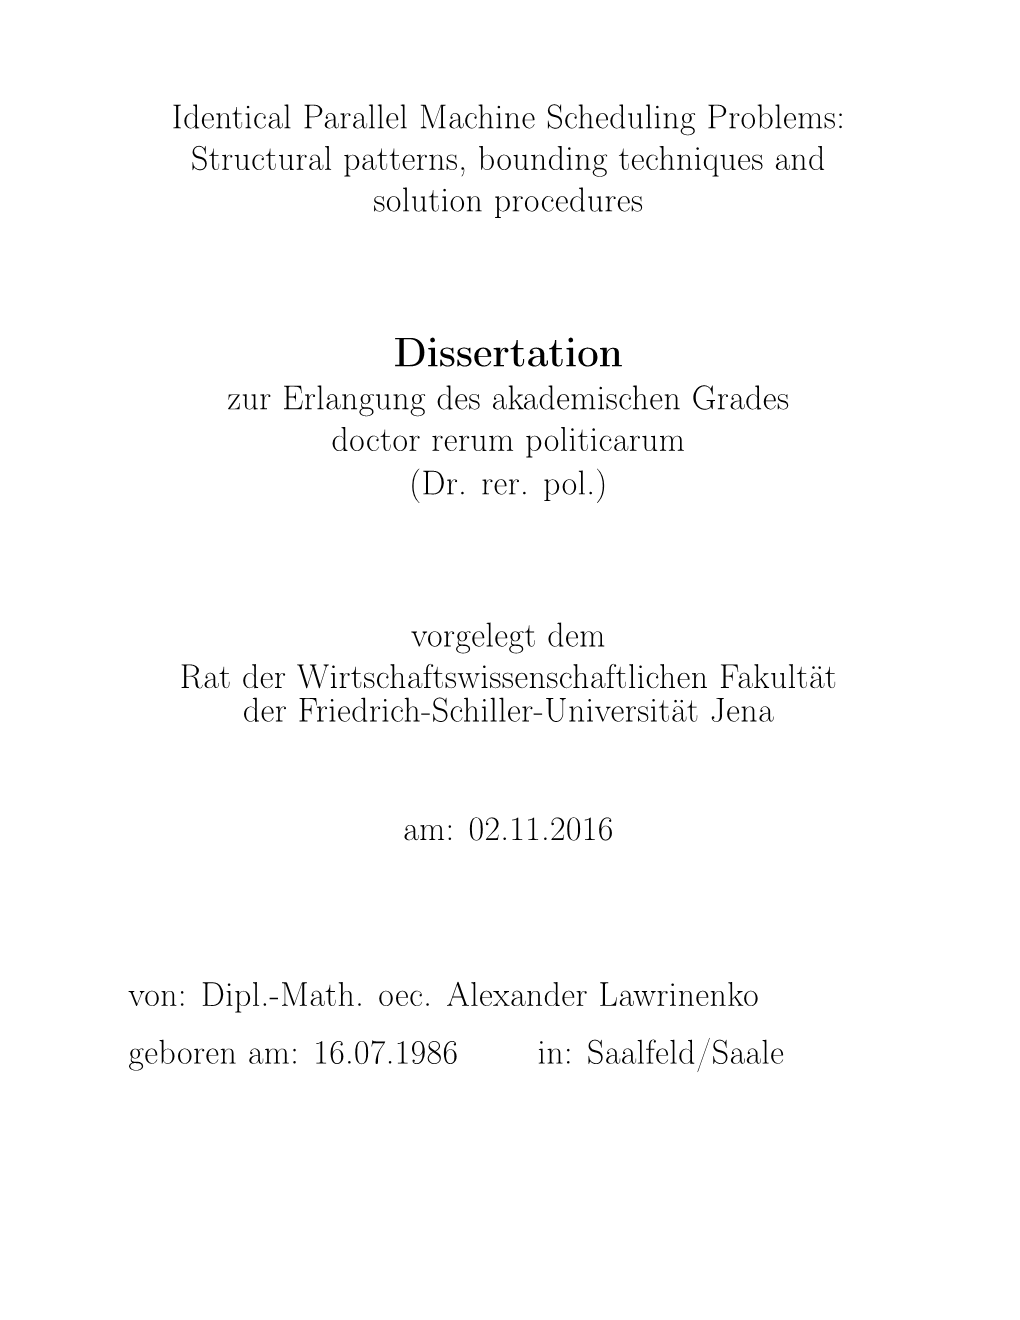 Dissertation Zur Erlangung Des Akademischen Grades Doctor Rerum Politicarum (Dr